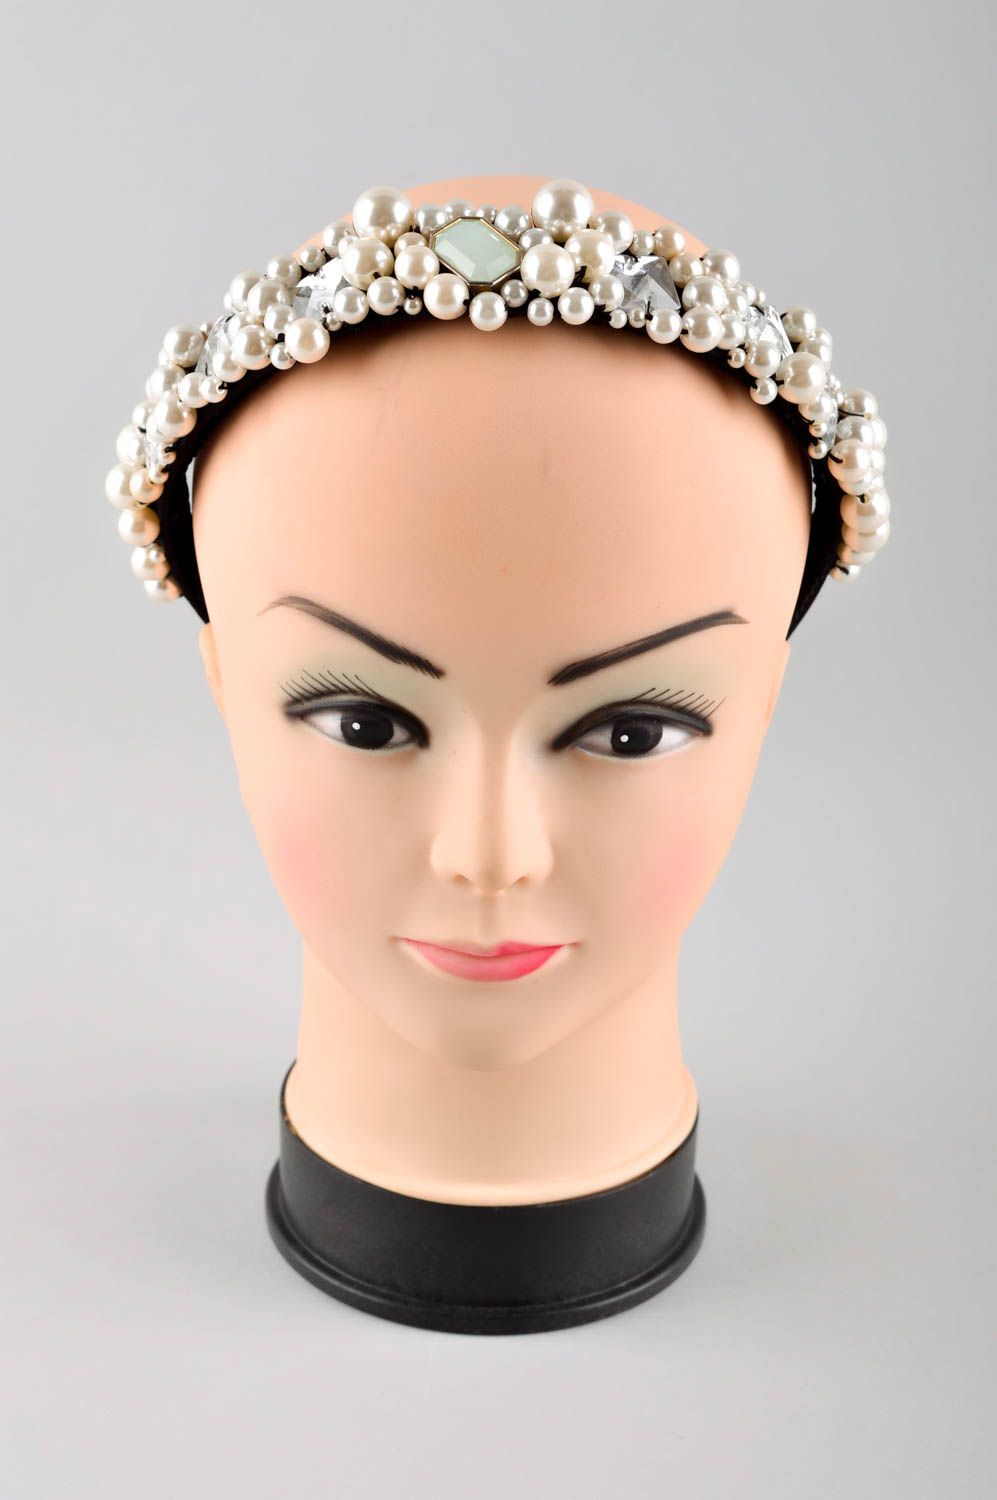 Аксессуар для волос ручной работы обруч на голову женский аксессуар модный фото 2